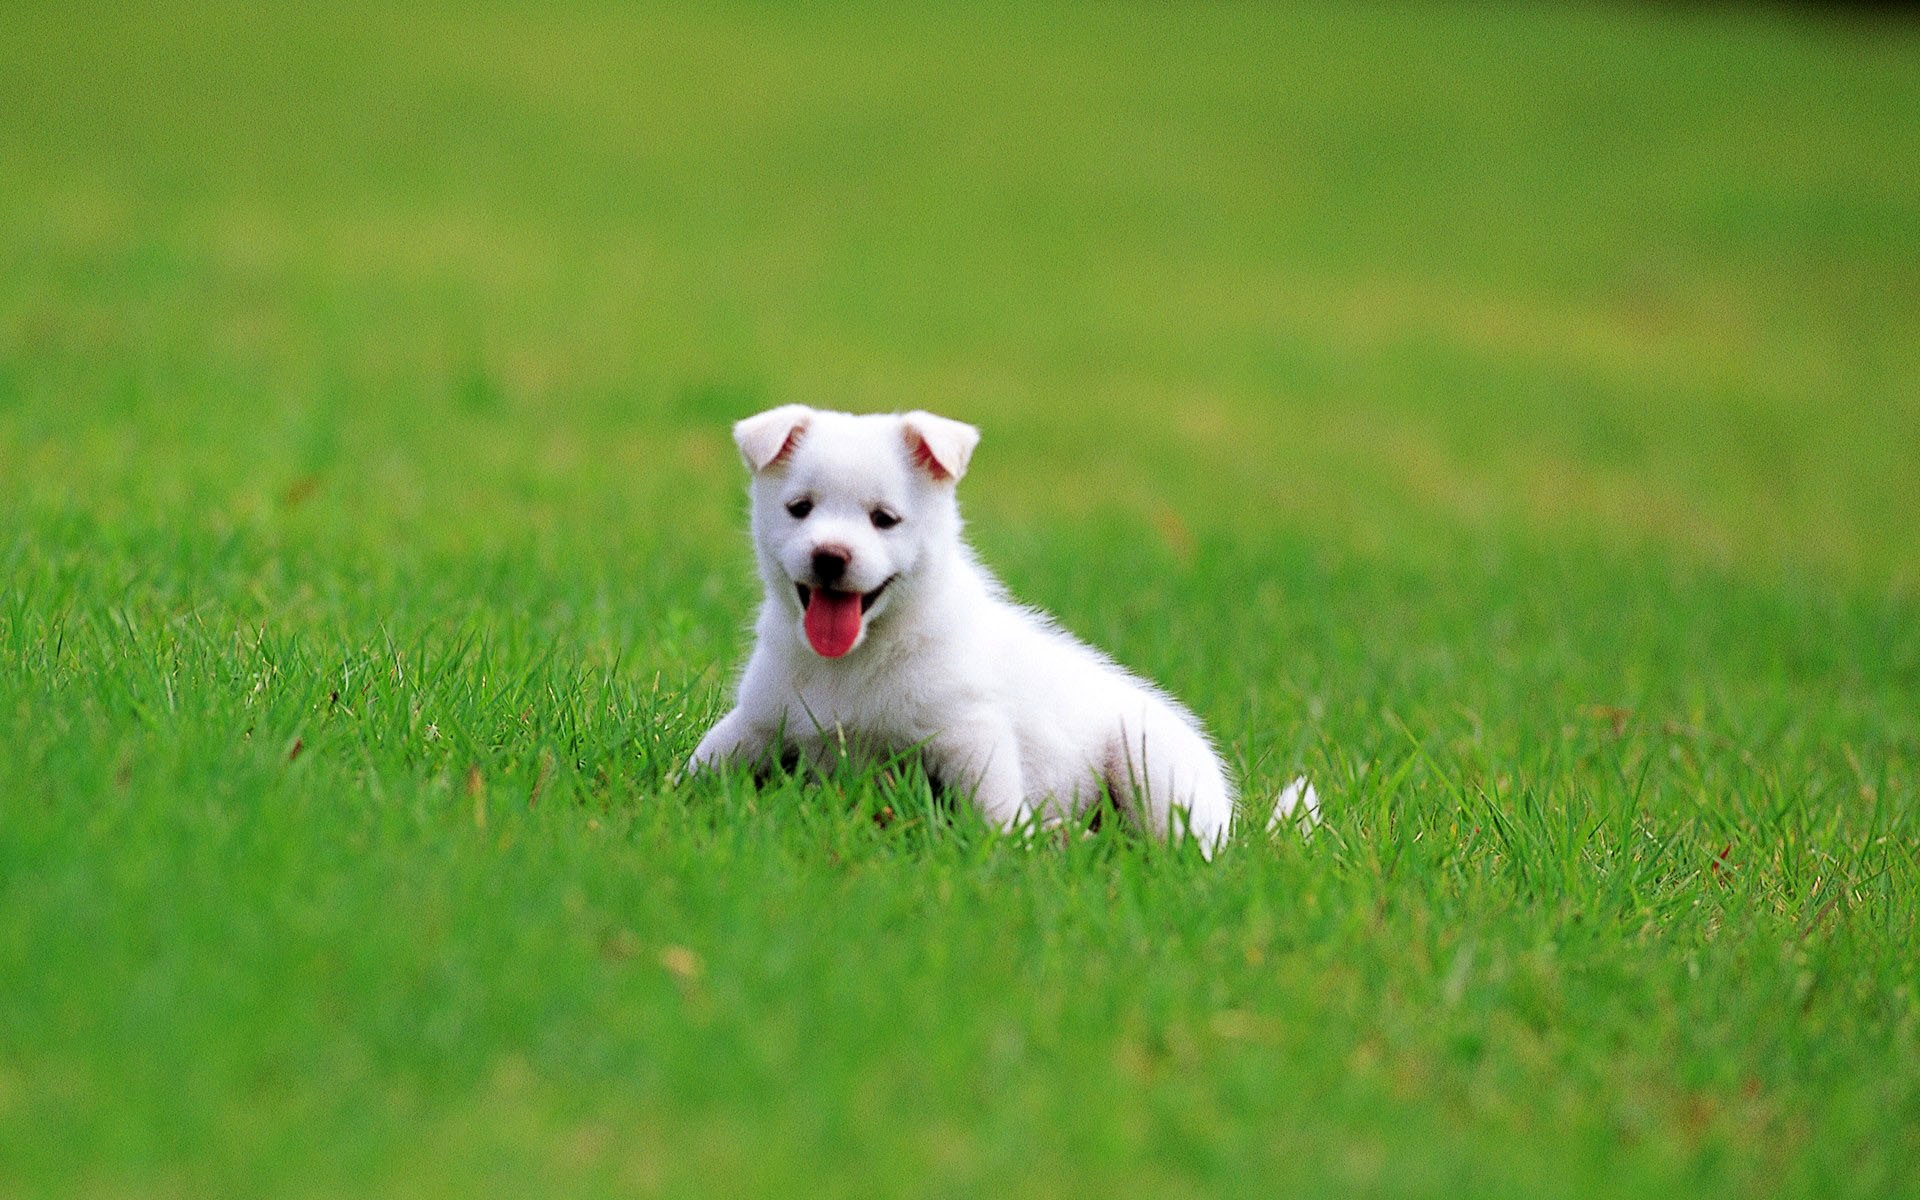 Hình nền chú chó trắng trên bãi cỏ xanh